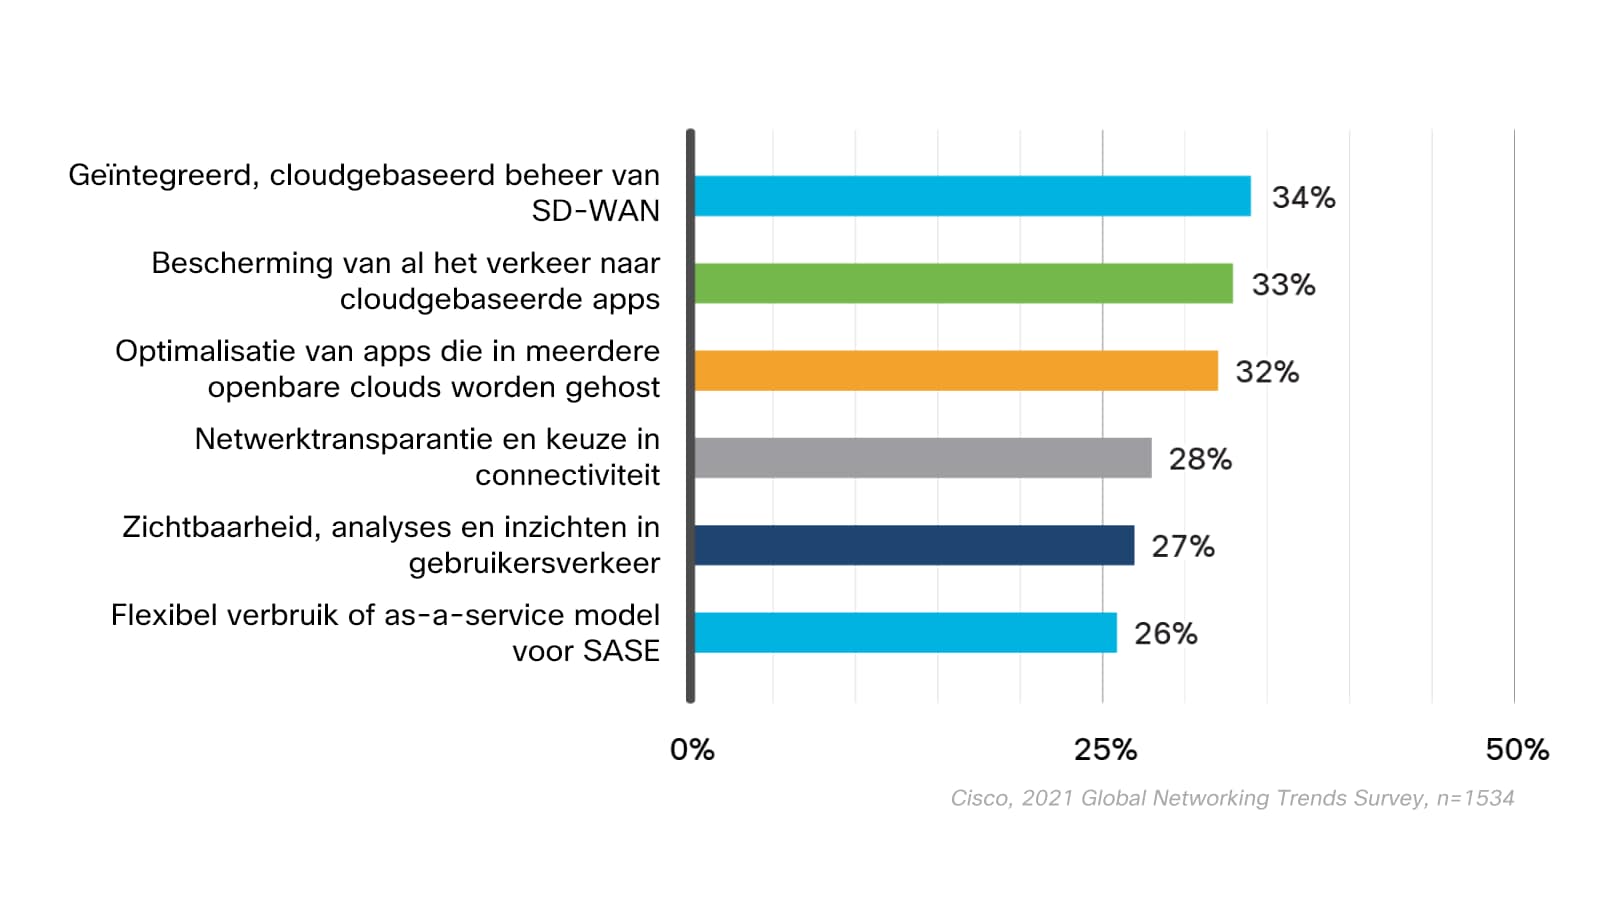 Grafiek met de SASE-mogelijkheden die een prioriteit vormen voor organisaties. 34% geeft prioriteit aan geïntegreerd, cloudgebaseerd beheer van SD-WAN, 33% aan bescherming van al het verkeer naar cloudgebaseerde apps, 32% aan de optimalisatie van apps gehost in meerdere openbare clouds, 28% aan netwerktransparantie en keuze in connectiviteit, 27% aan zichtbaarheid, analyses en inzichten in gebruikersverkeer, en 26% aan flexibel verbruik of as-a-service model voor SASE.